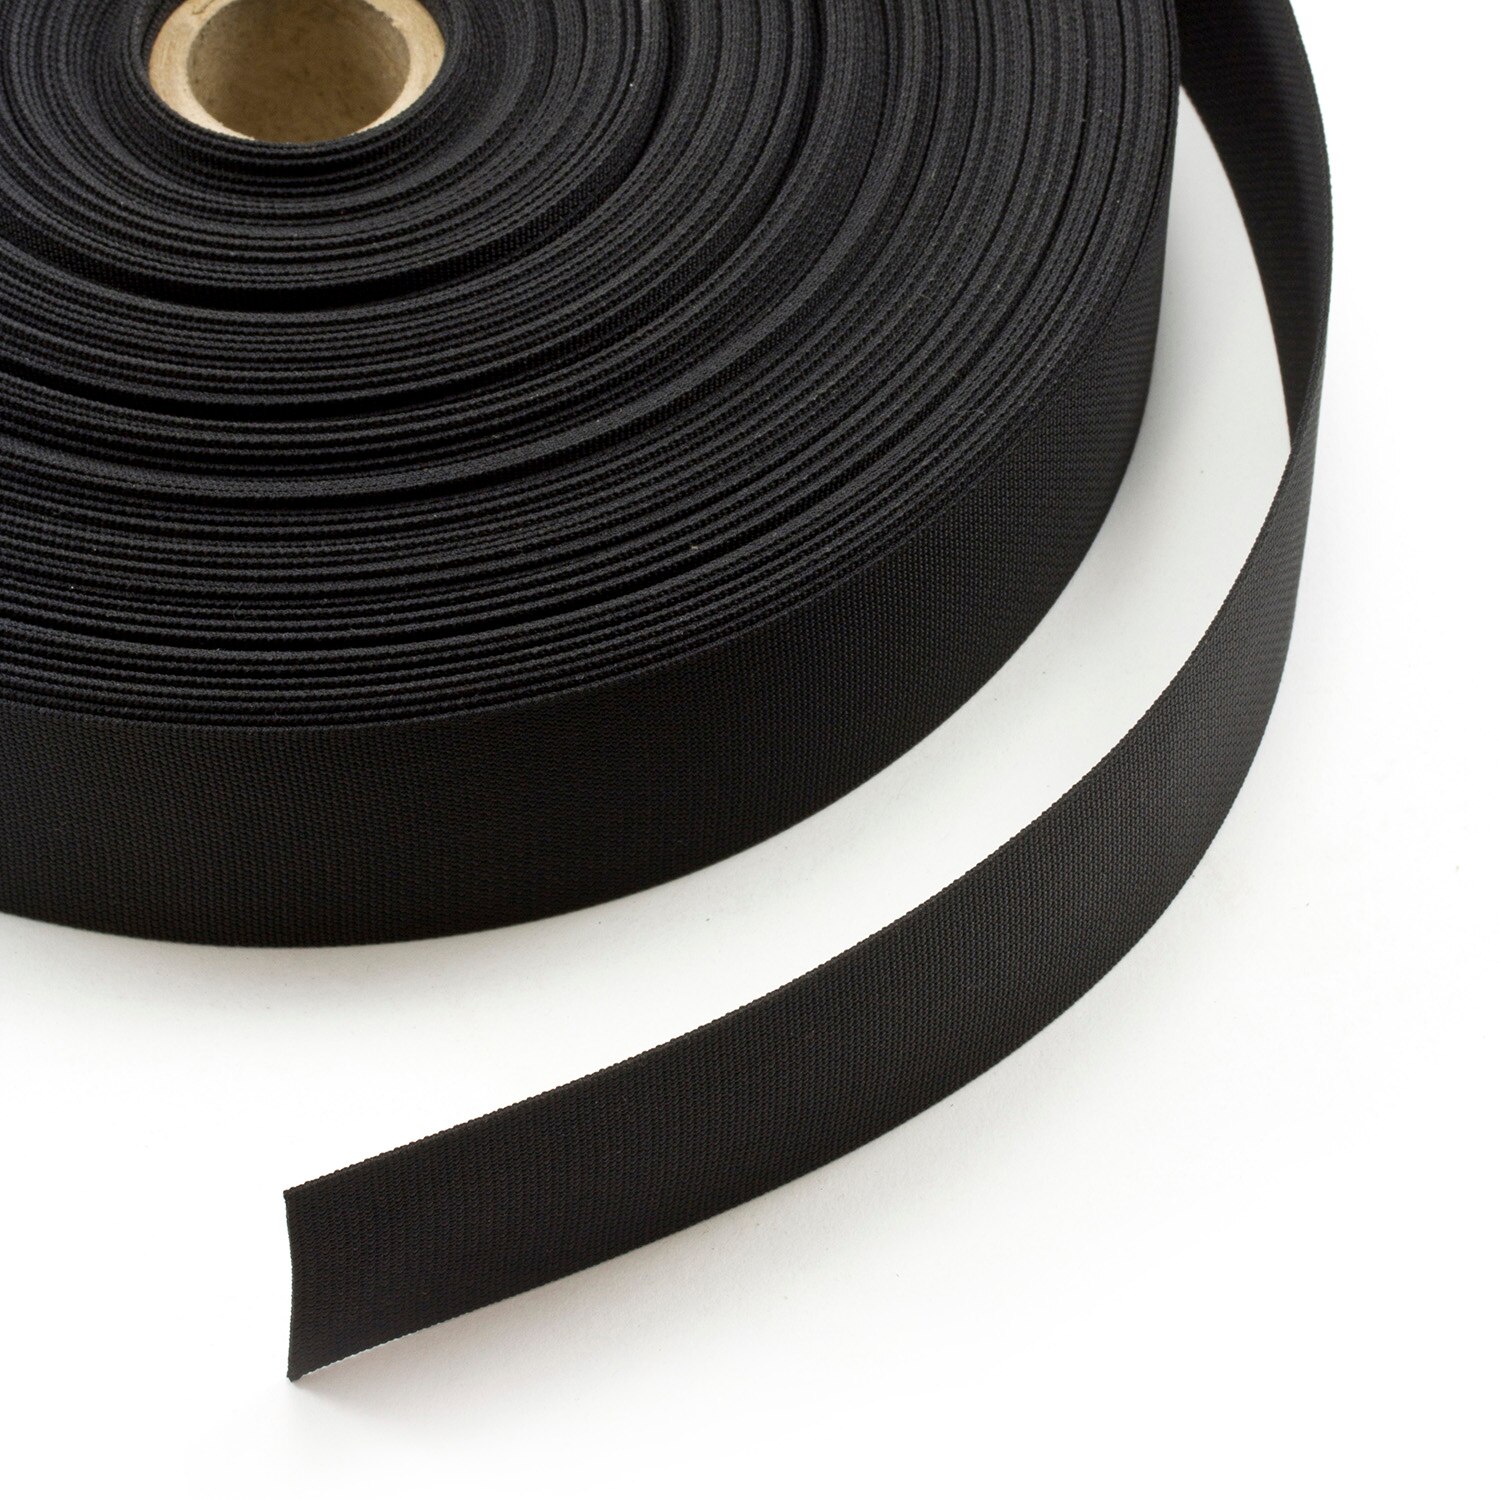 Nylon Webbing 2 Black N0015 (100 yards) Fabric